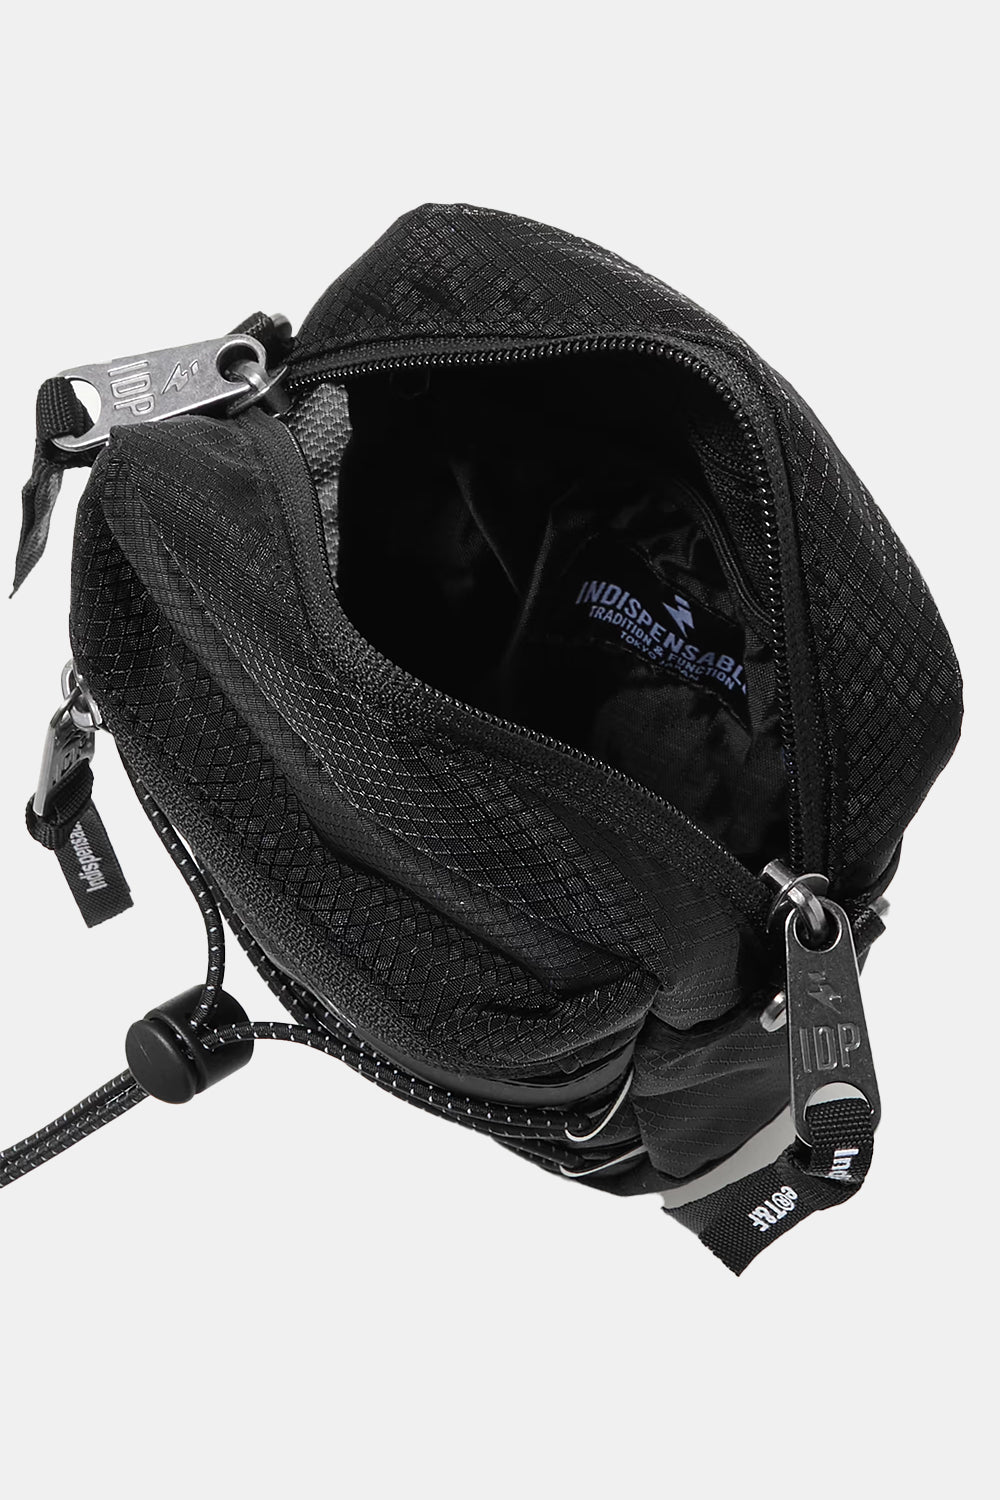 Indispensable IDP Shoulder Bag Little Strap (Black)